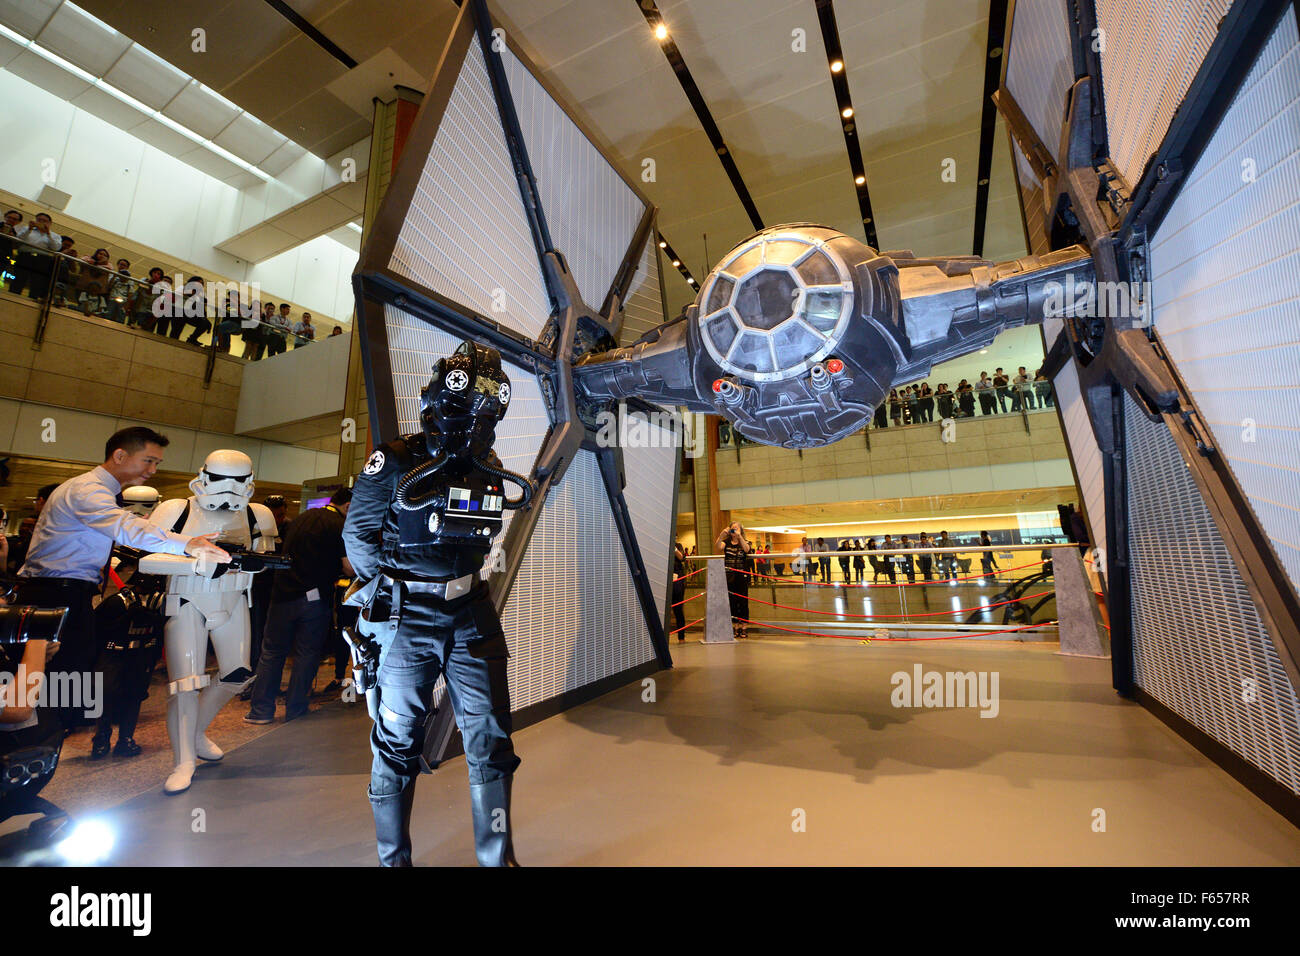 Singapur. 12 Nov, 2015. Artistas vestidos como personajes de la película 'Star  Wars' realice durante el 'Star Wars' modelos de combate ceremonia en el  aeropuerto Changi de Singapur, 12 Nov 2015. El